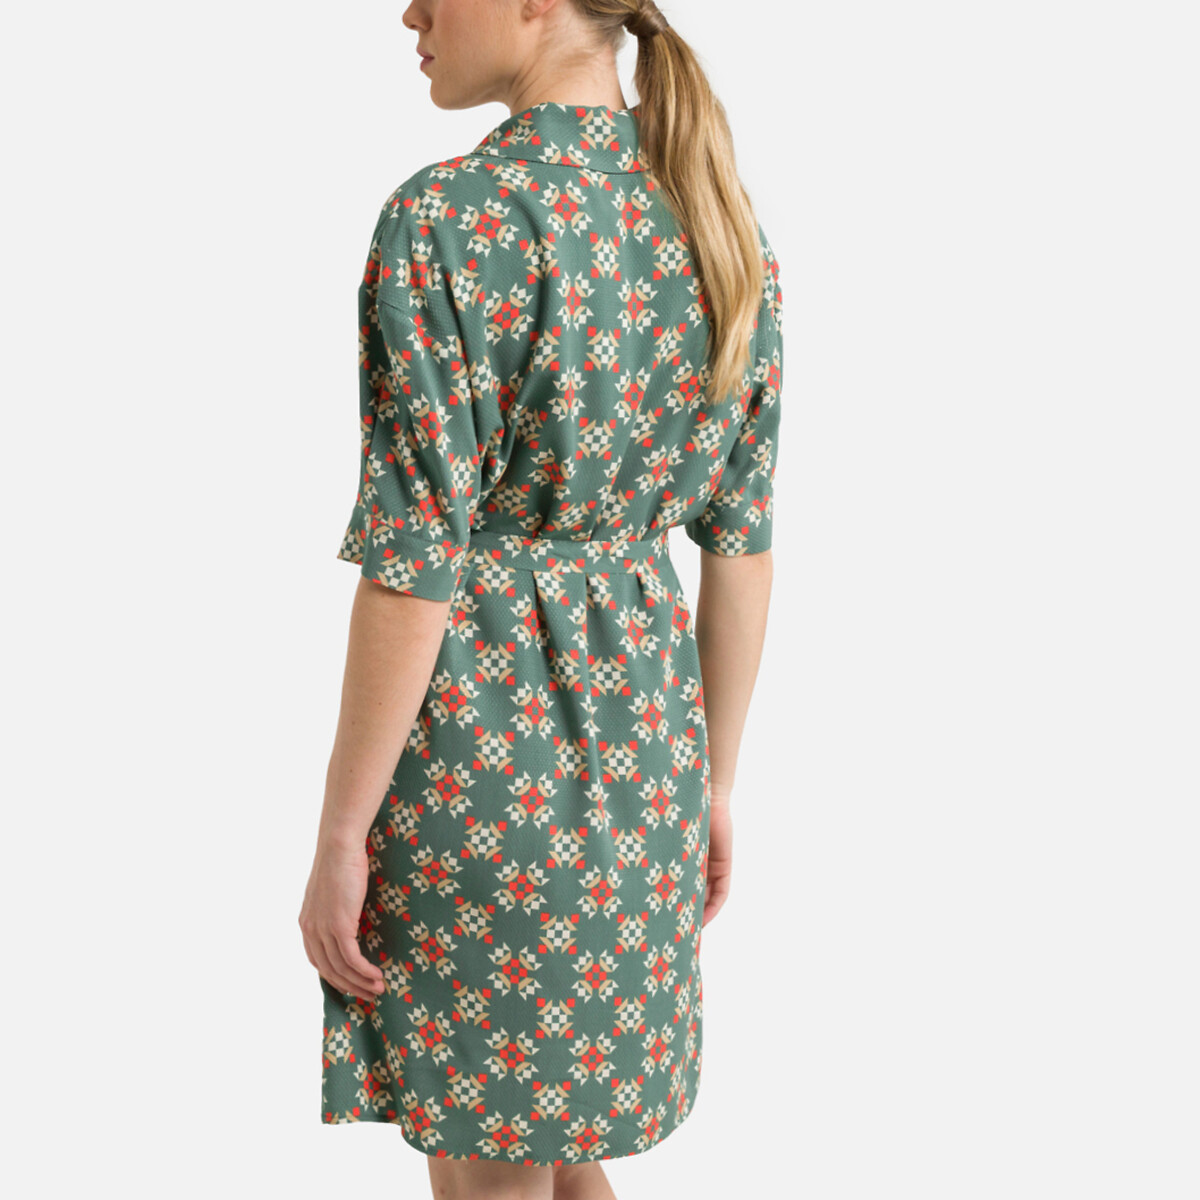 Платье-рубашка Рукава 34 с принтом 46 зеленый LaRedoute, размер 46 - фото 4